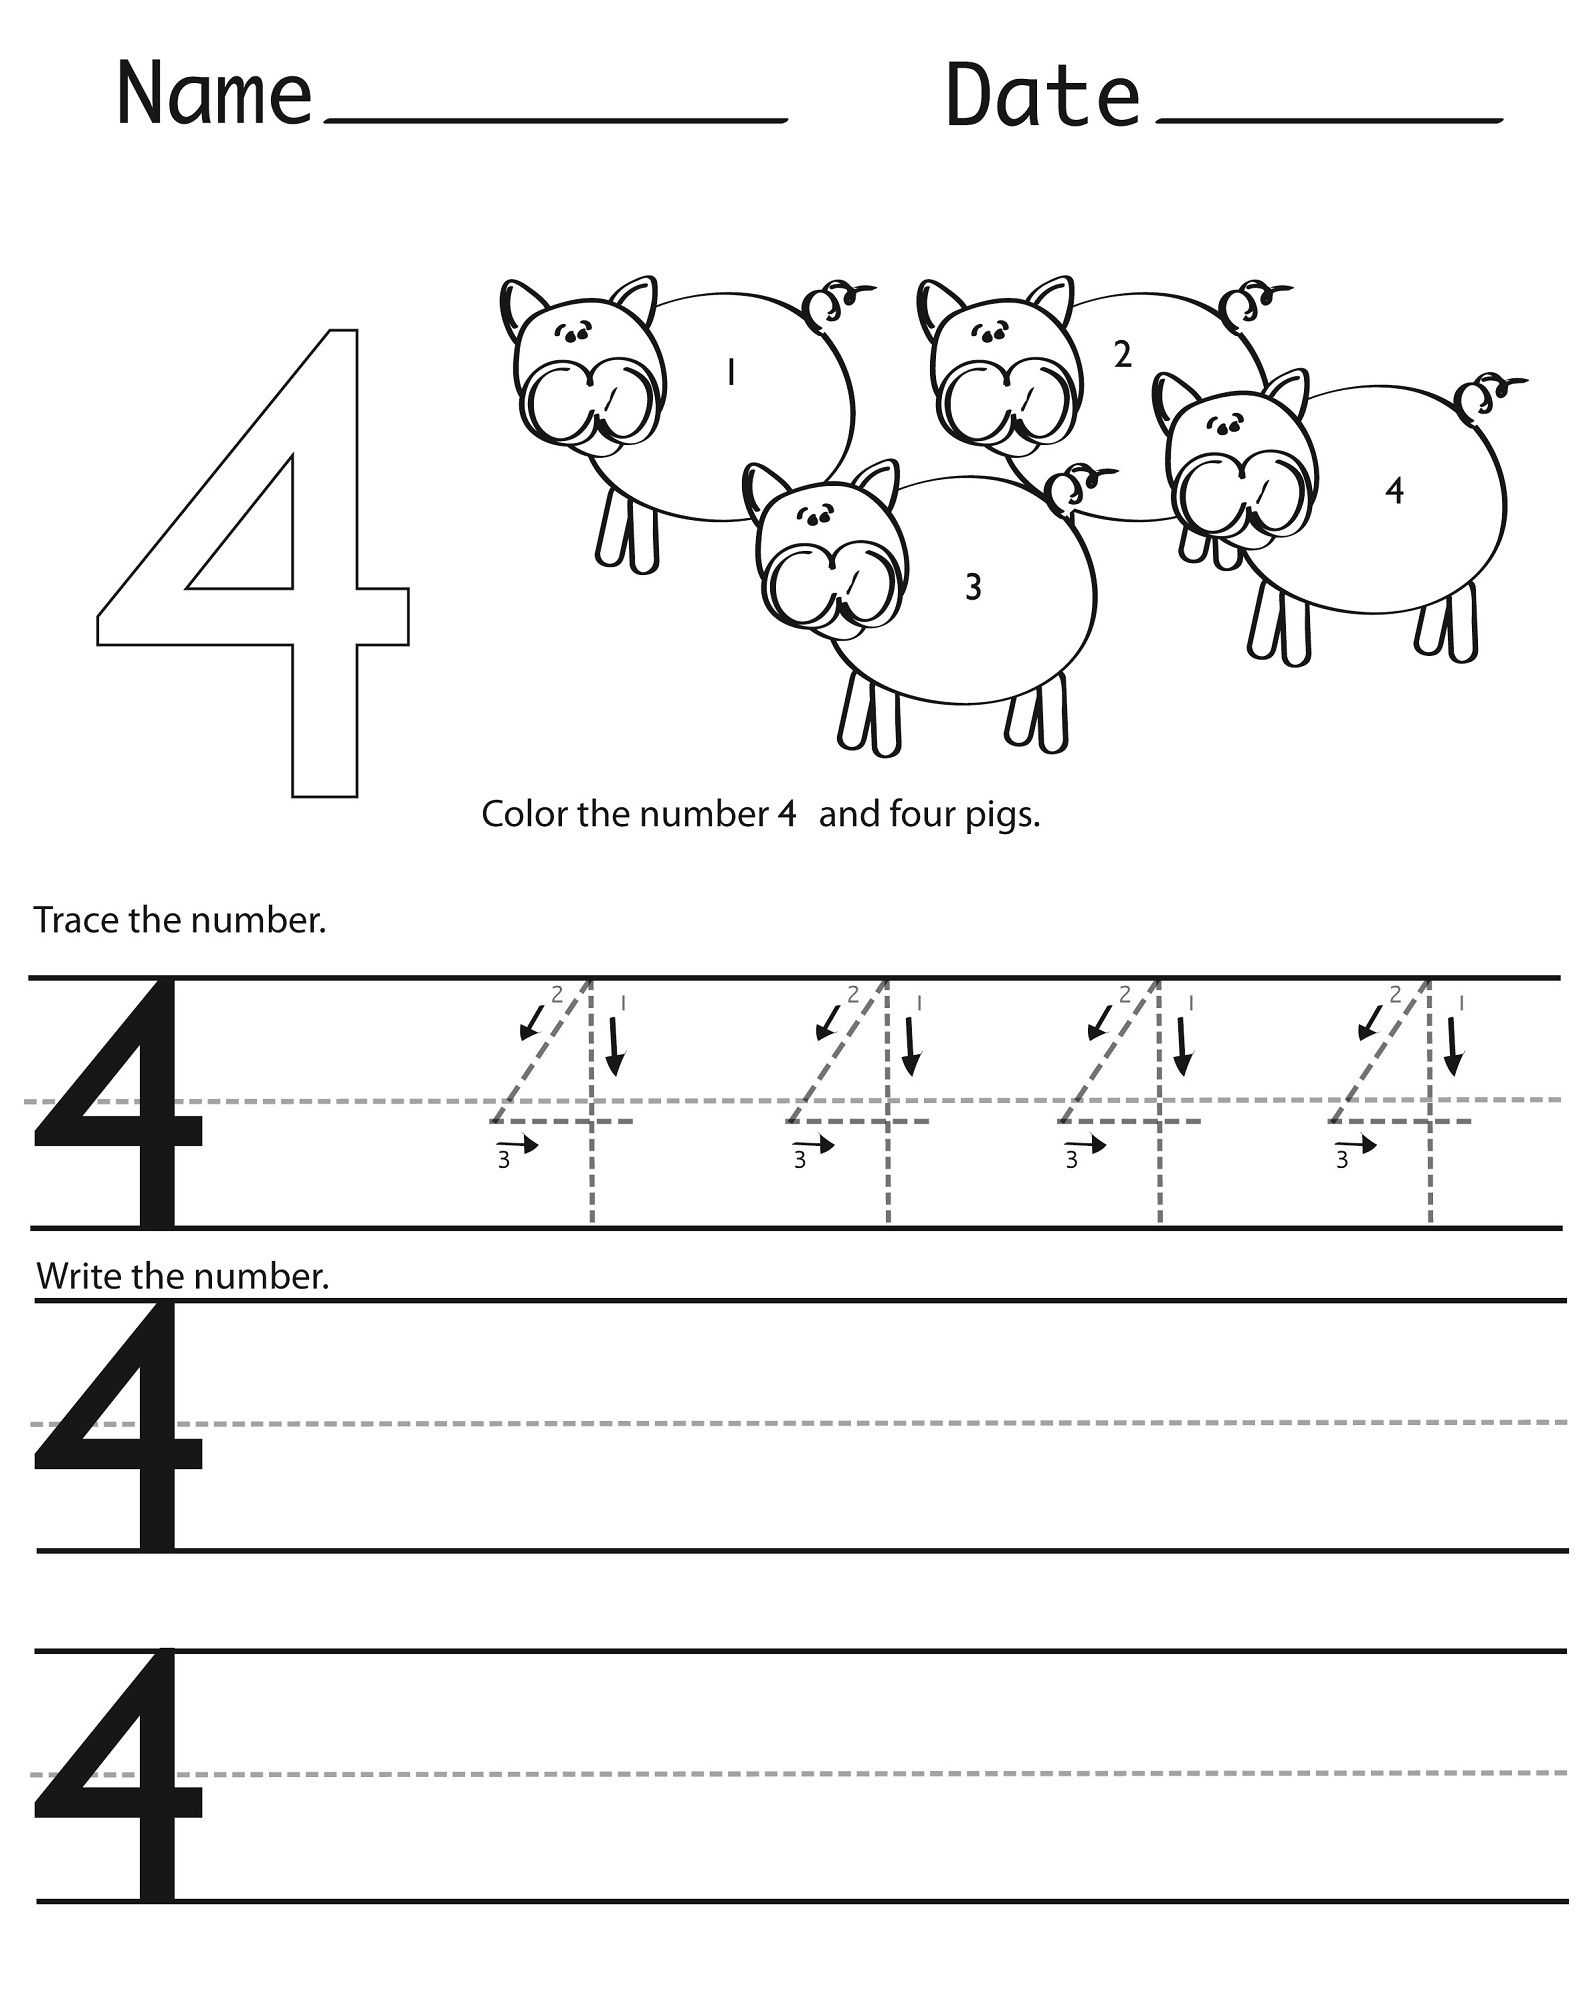 Place Value Worksheets for Kindergarten Along with Number 4 Worksheets for Children Activity Shelter